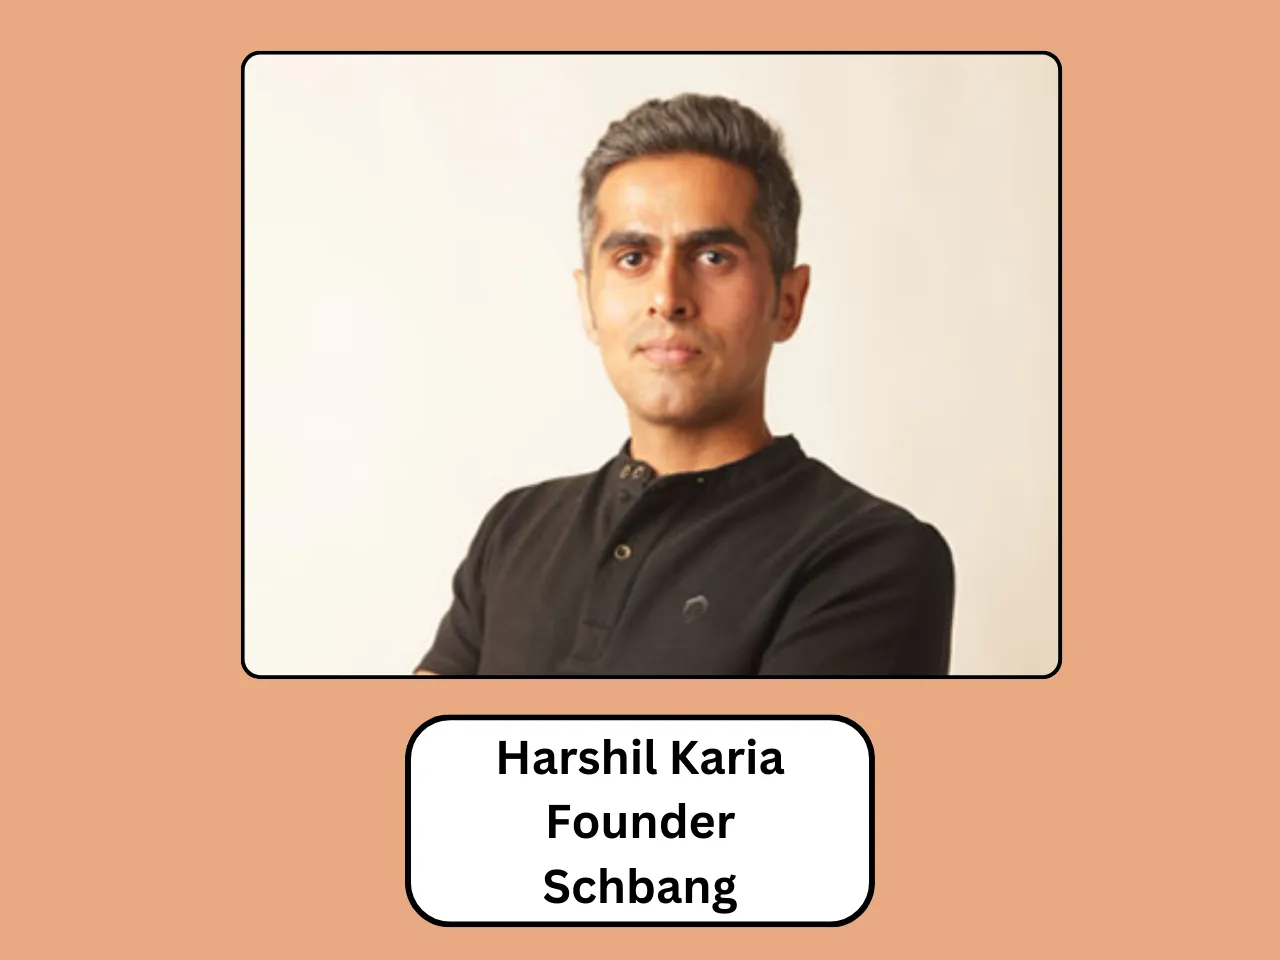 Schbang’s Harshil Karia